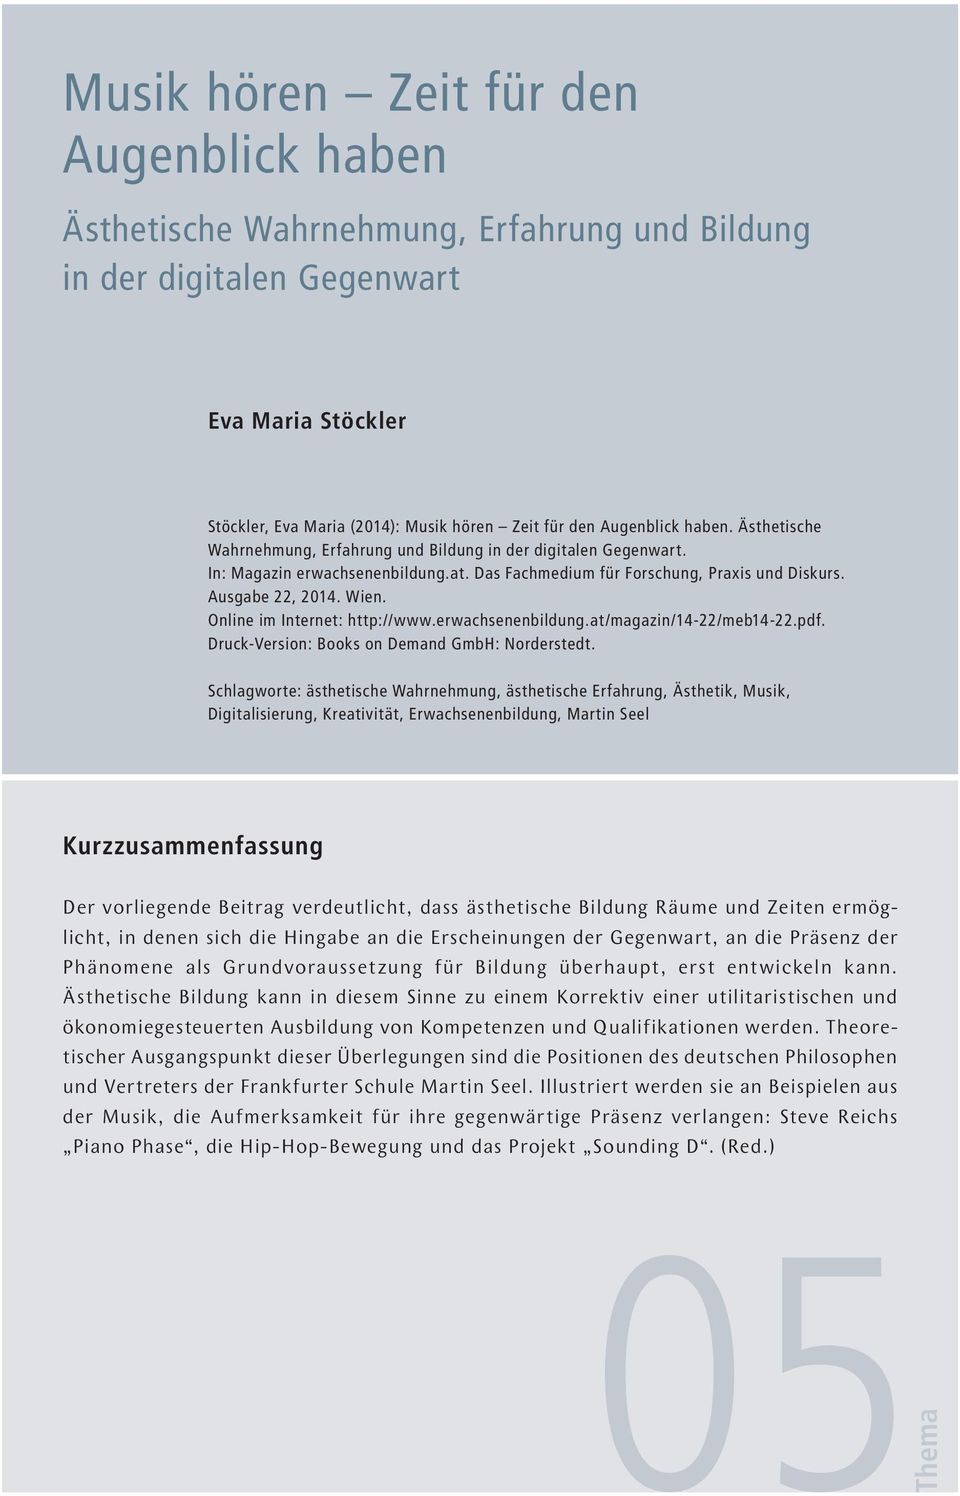 Online im Internet: http://www.erwachsenenbildung.at/magazin/14-22/meb14-22.pdf. Druck-Version: Books on Demand GmbH: Norderstedt.